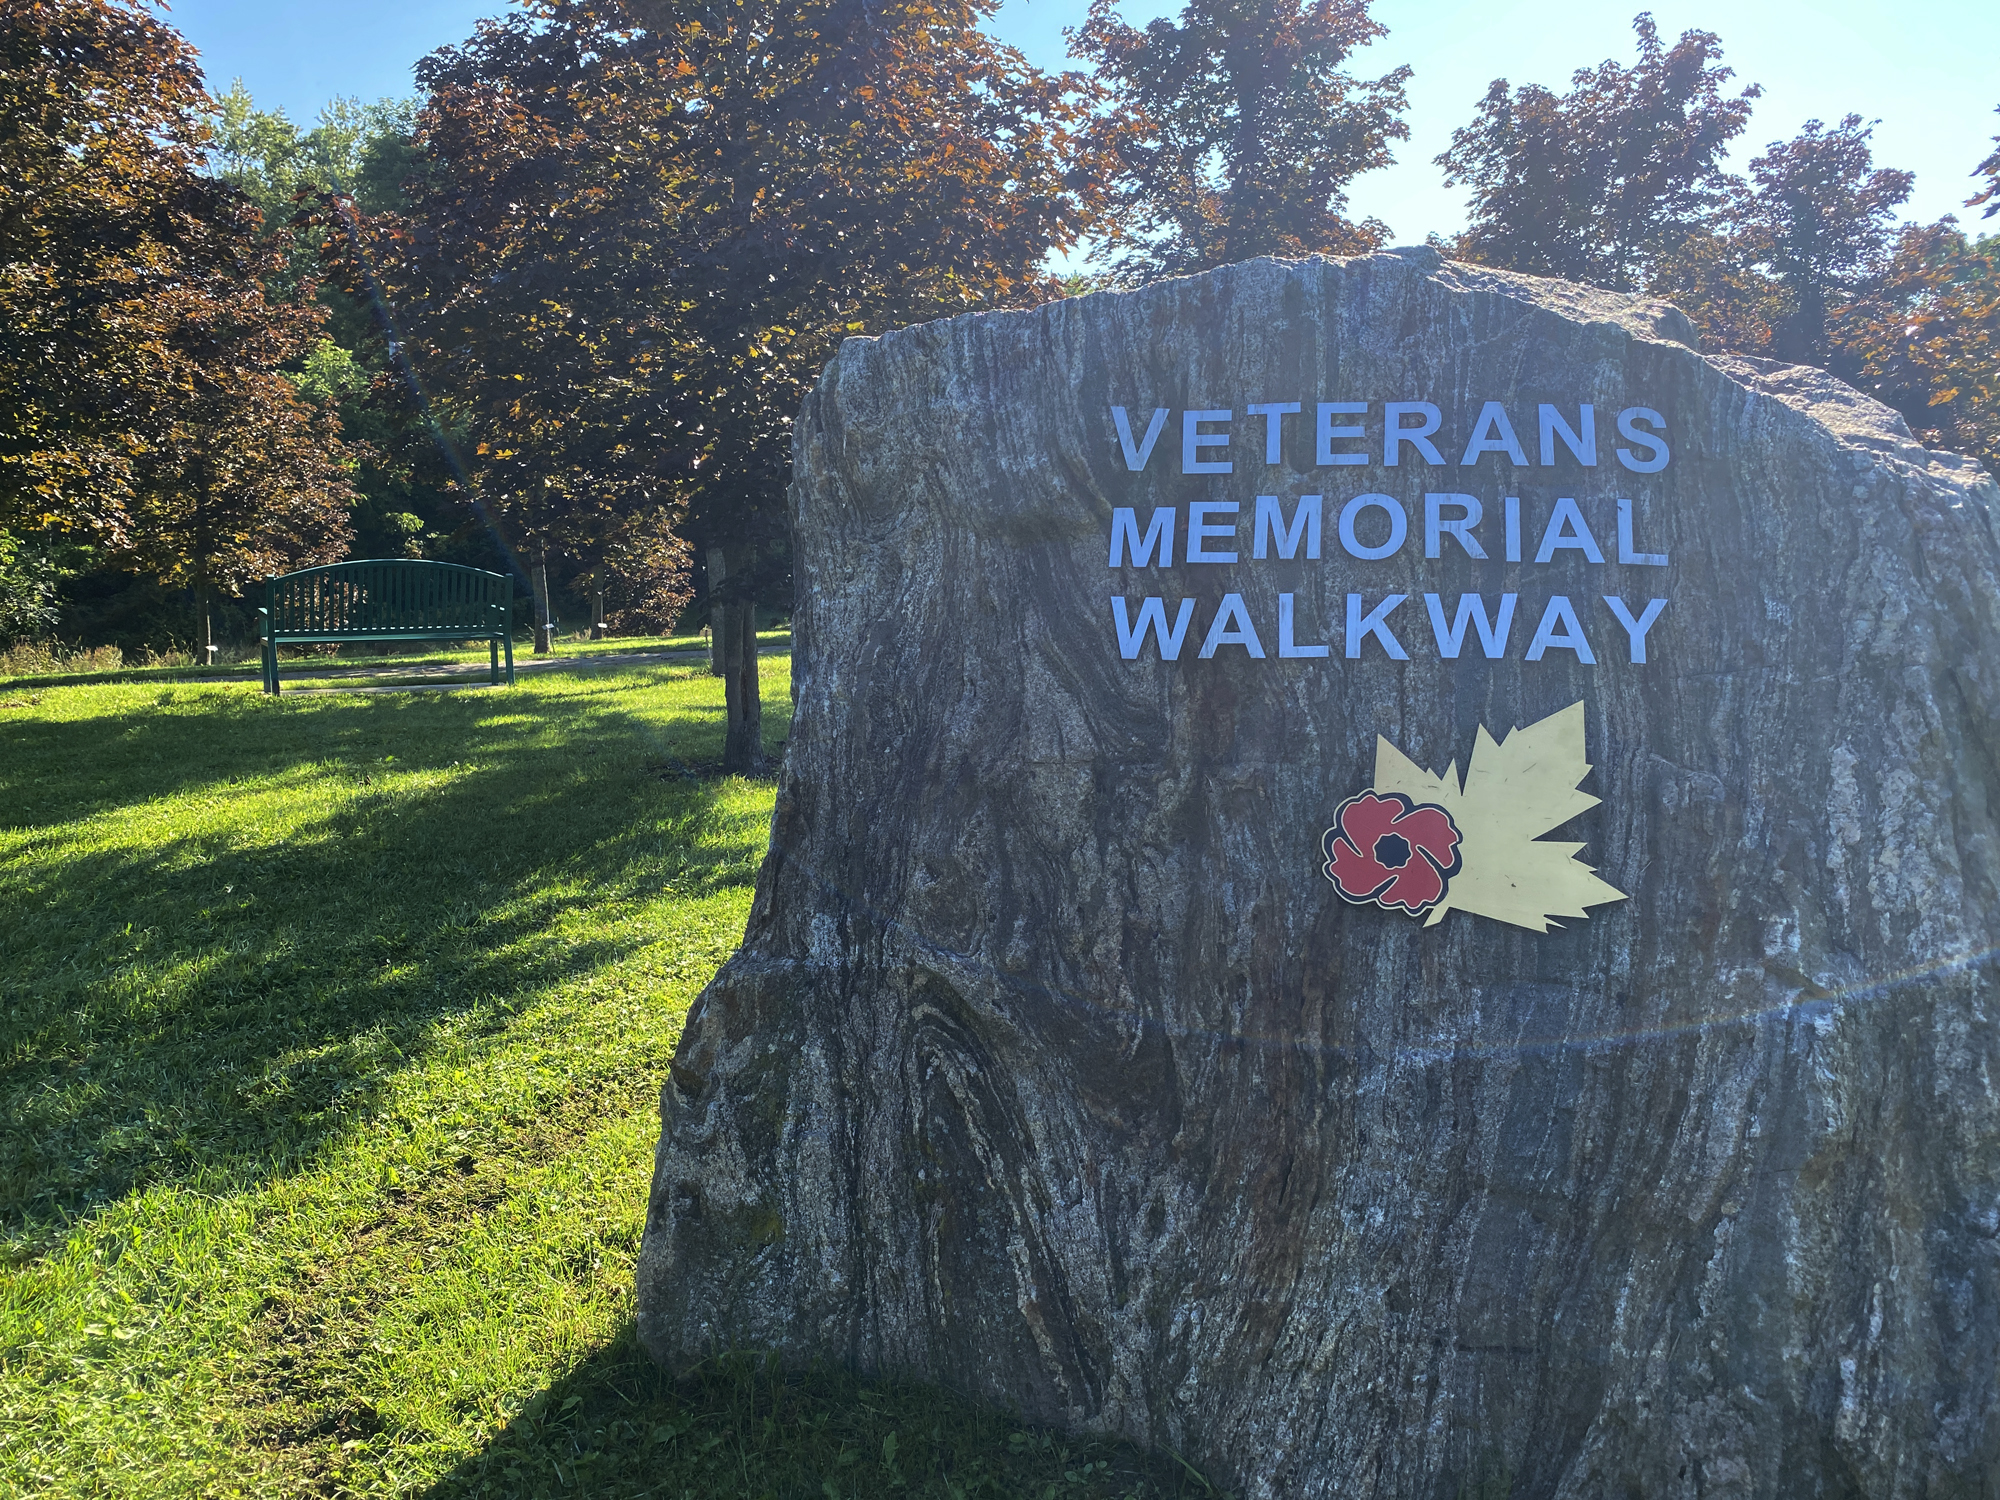 The Veterans Walkway